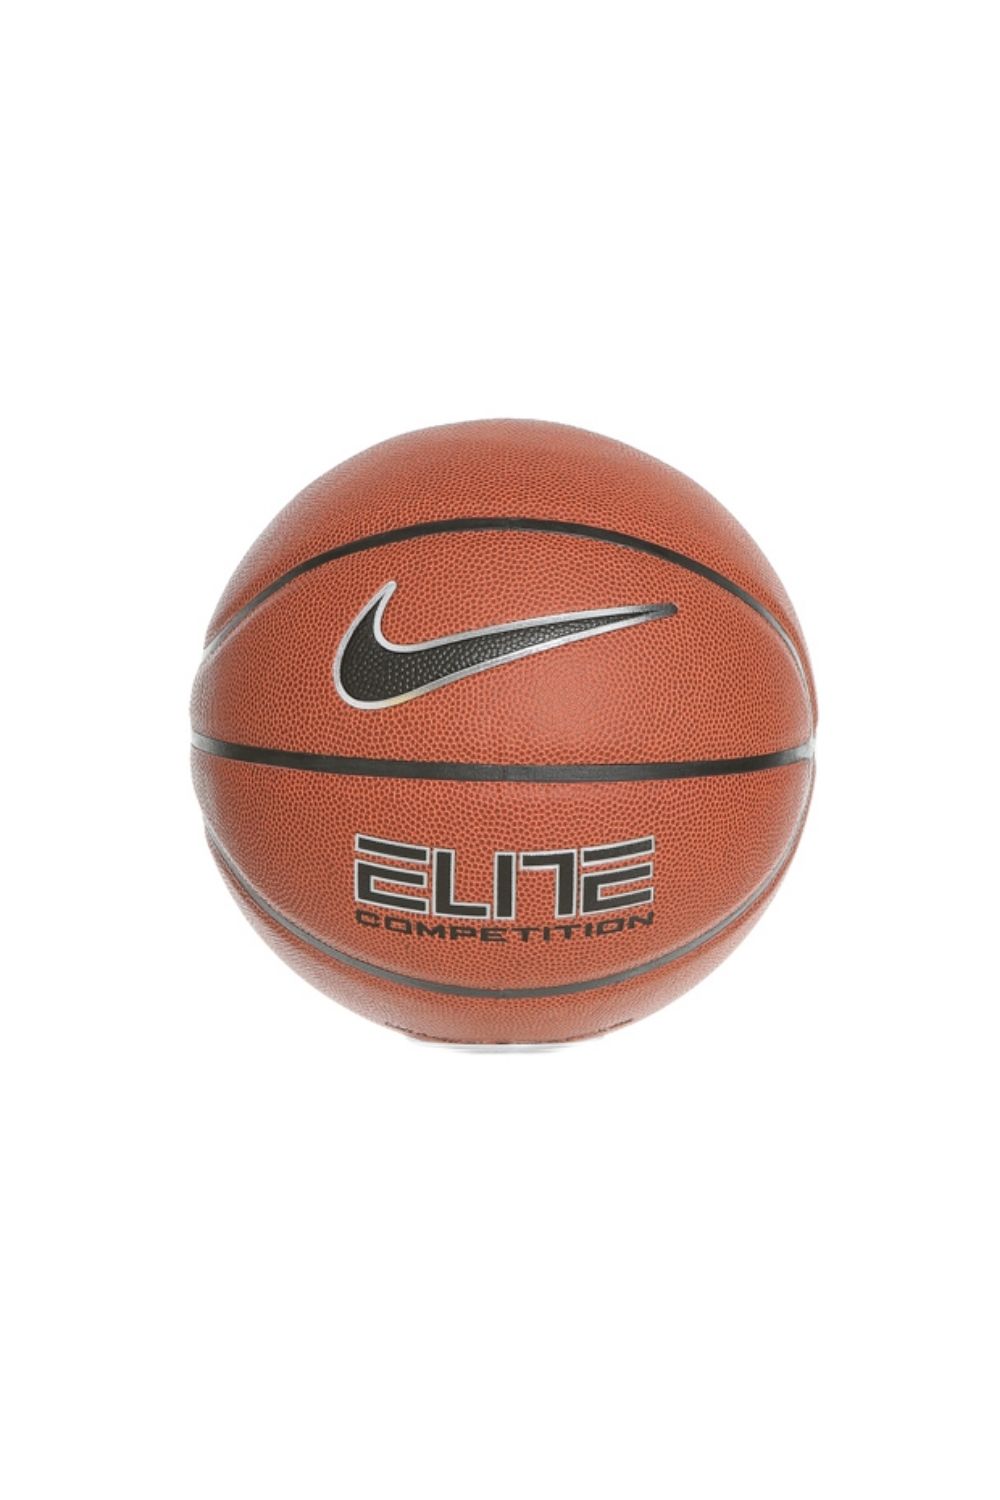 Ανδρικά/Αξεσουάρ/Αθλητικά Είδη/Μπάλες NIKE - Μπάλα basketball NIKE ELITE COMPETITION 8P πορτοκαλί